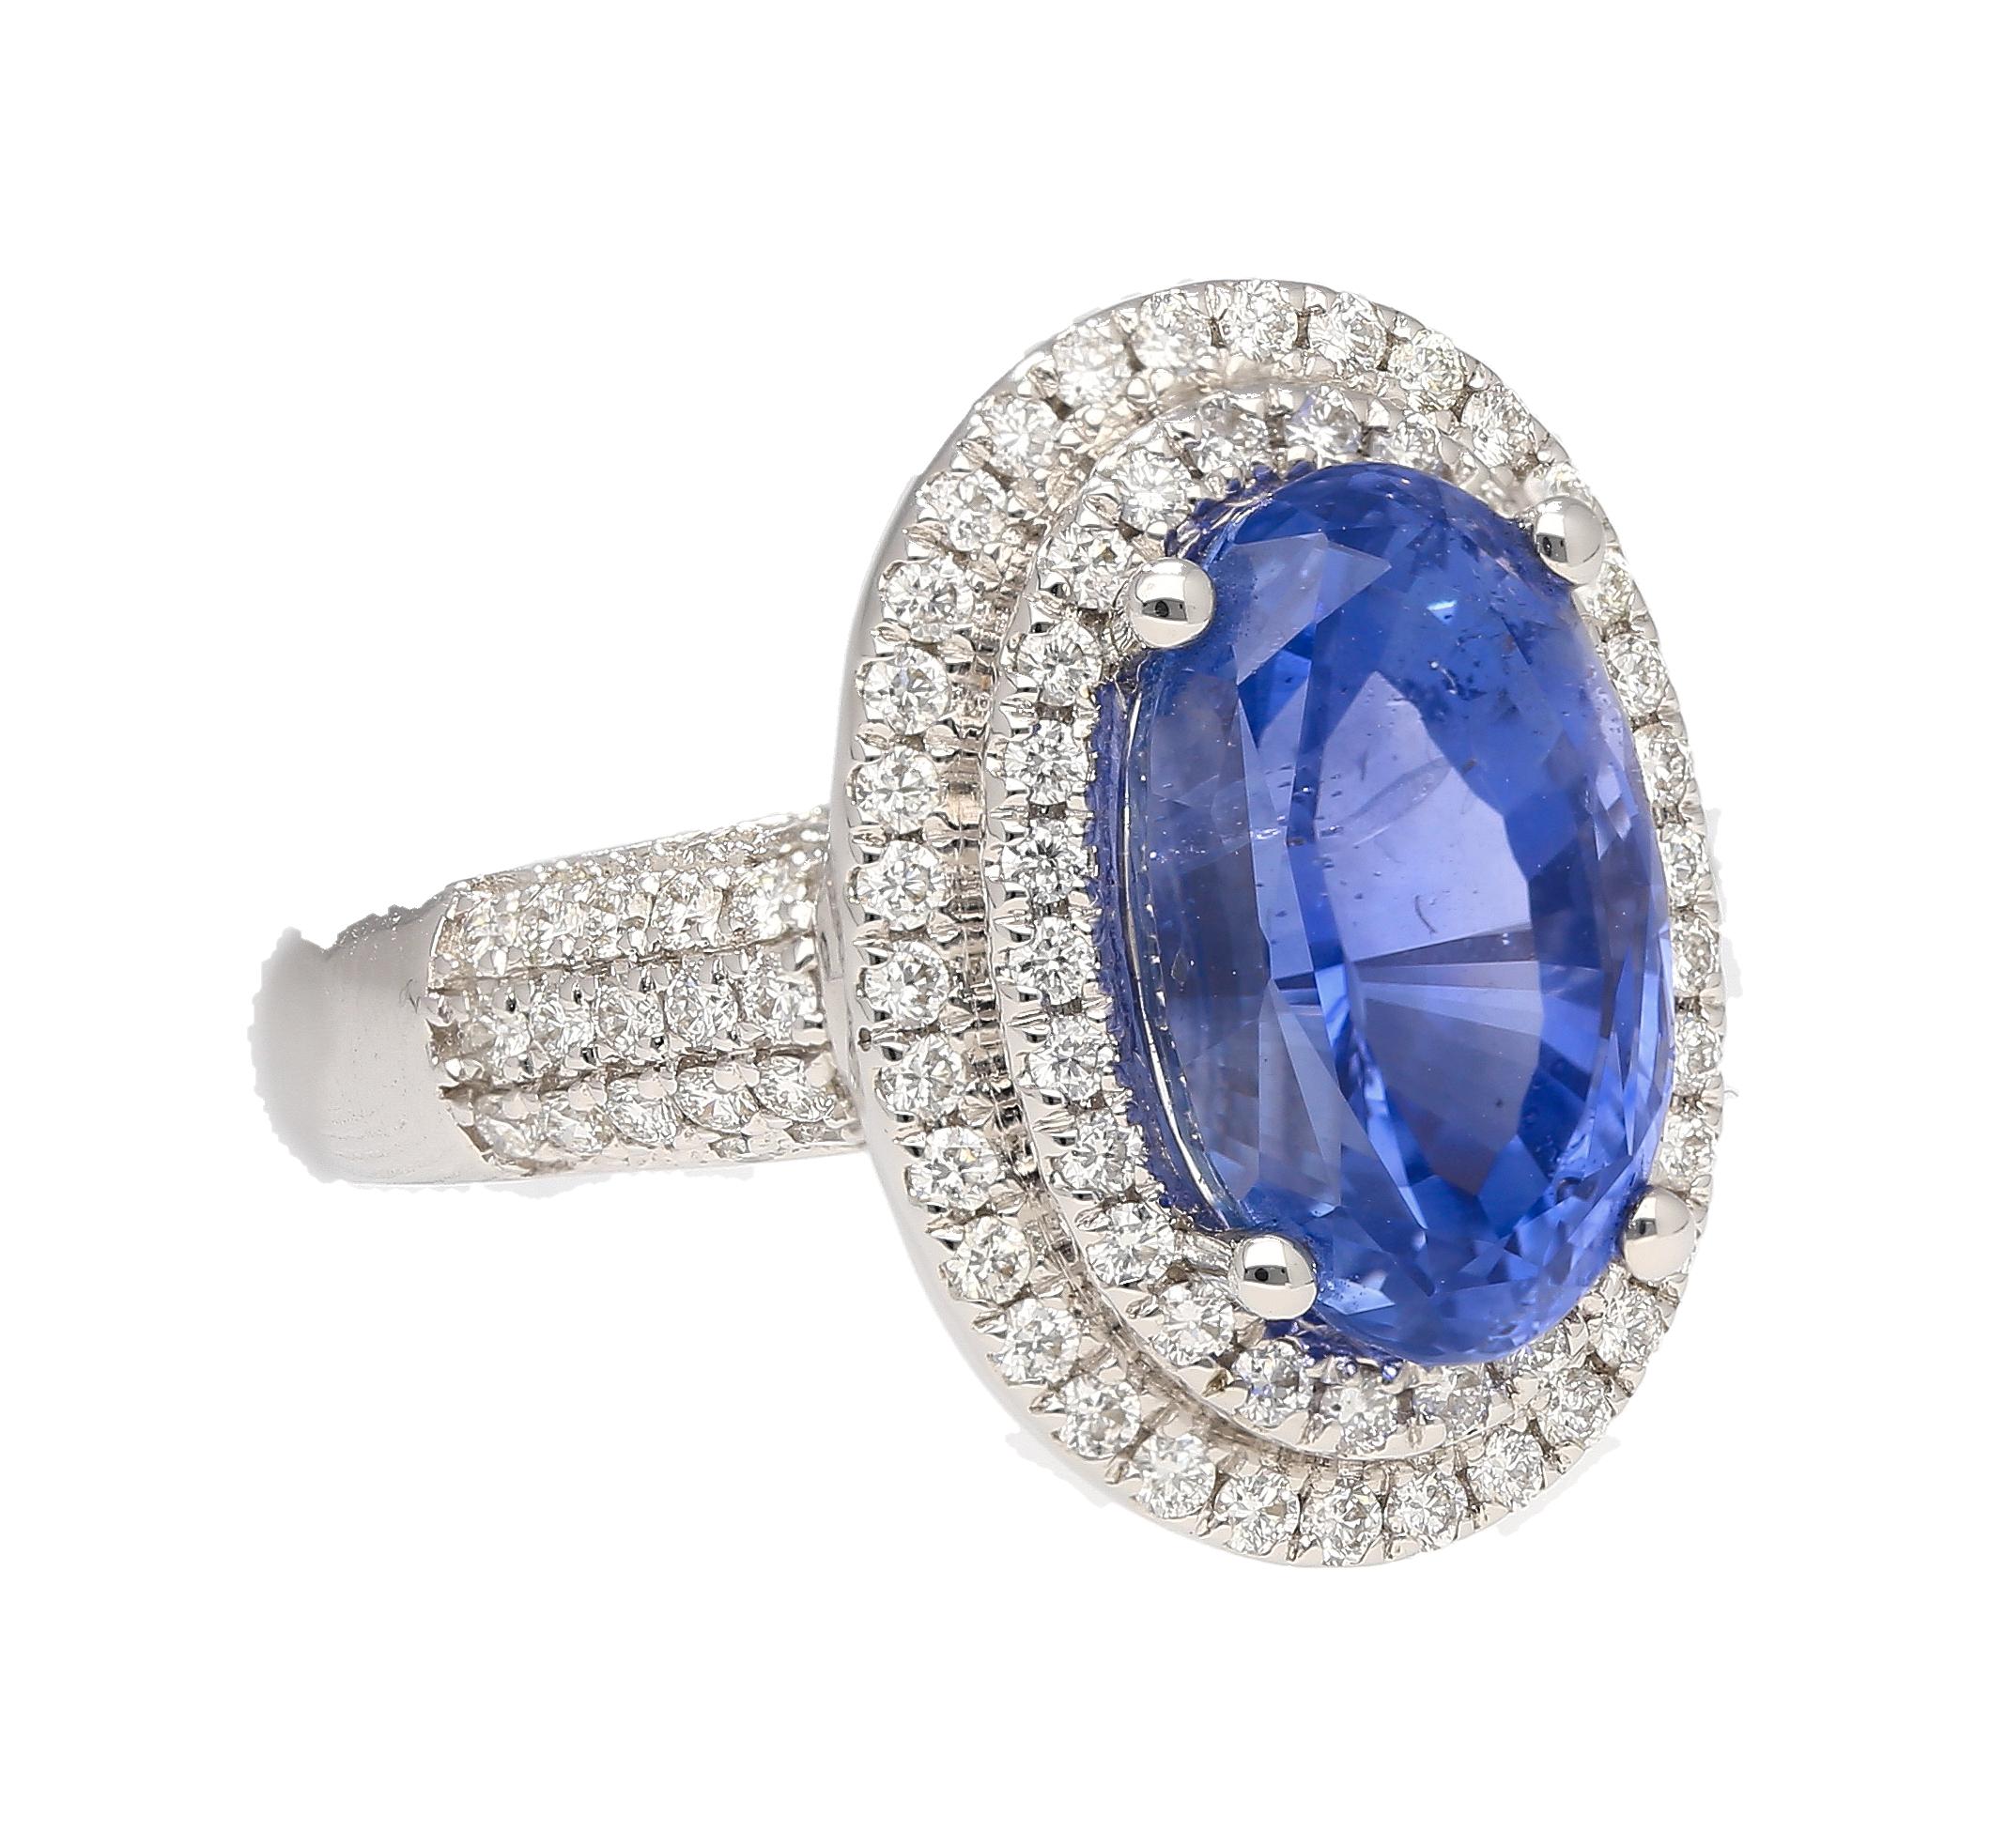 Halo-Ring aus 18 Karat Weißgold mit natürlichem blauem Saphir und Diamant. Mit einem Mittelstein von tadelloser Farbe und Qualität. Sie stammen aus Sri Lanka, haben einen dichten Farbton und sind in keiner Weise wärmebehandelt. Dieser Saphir hat die